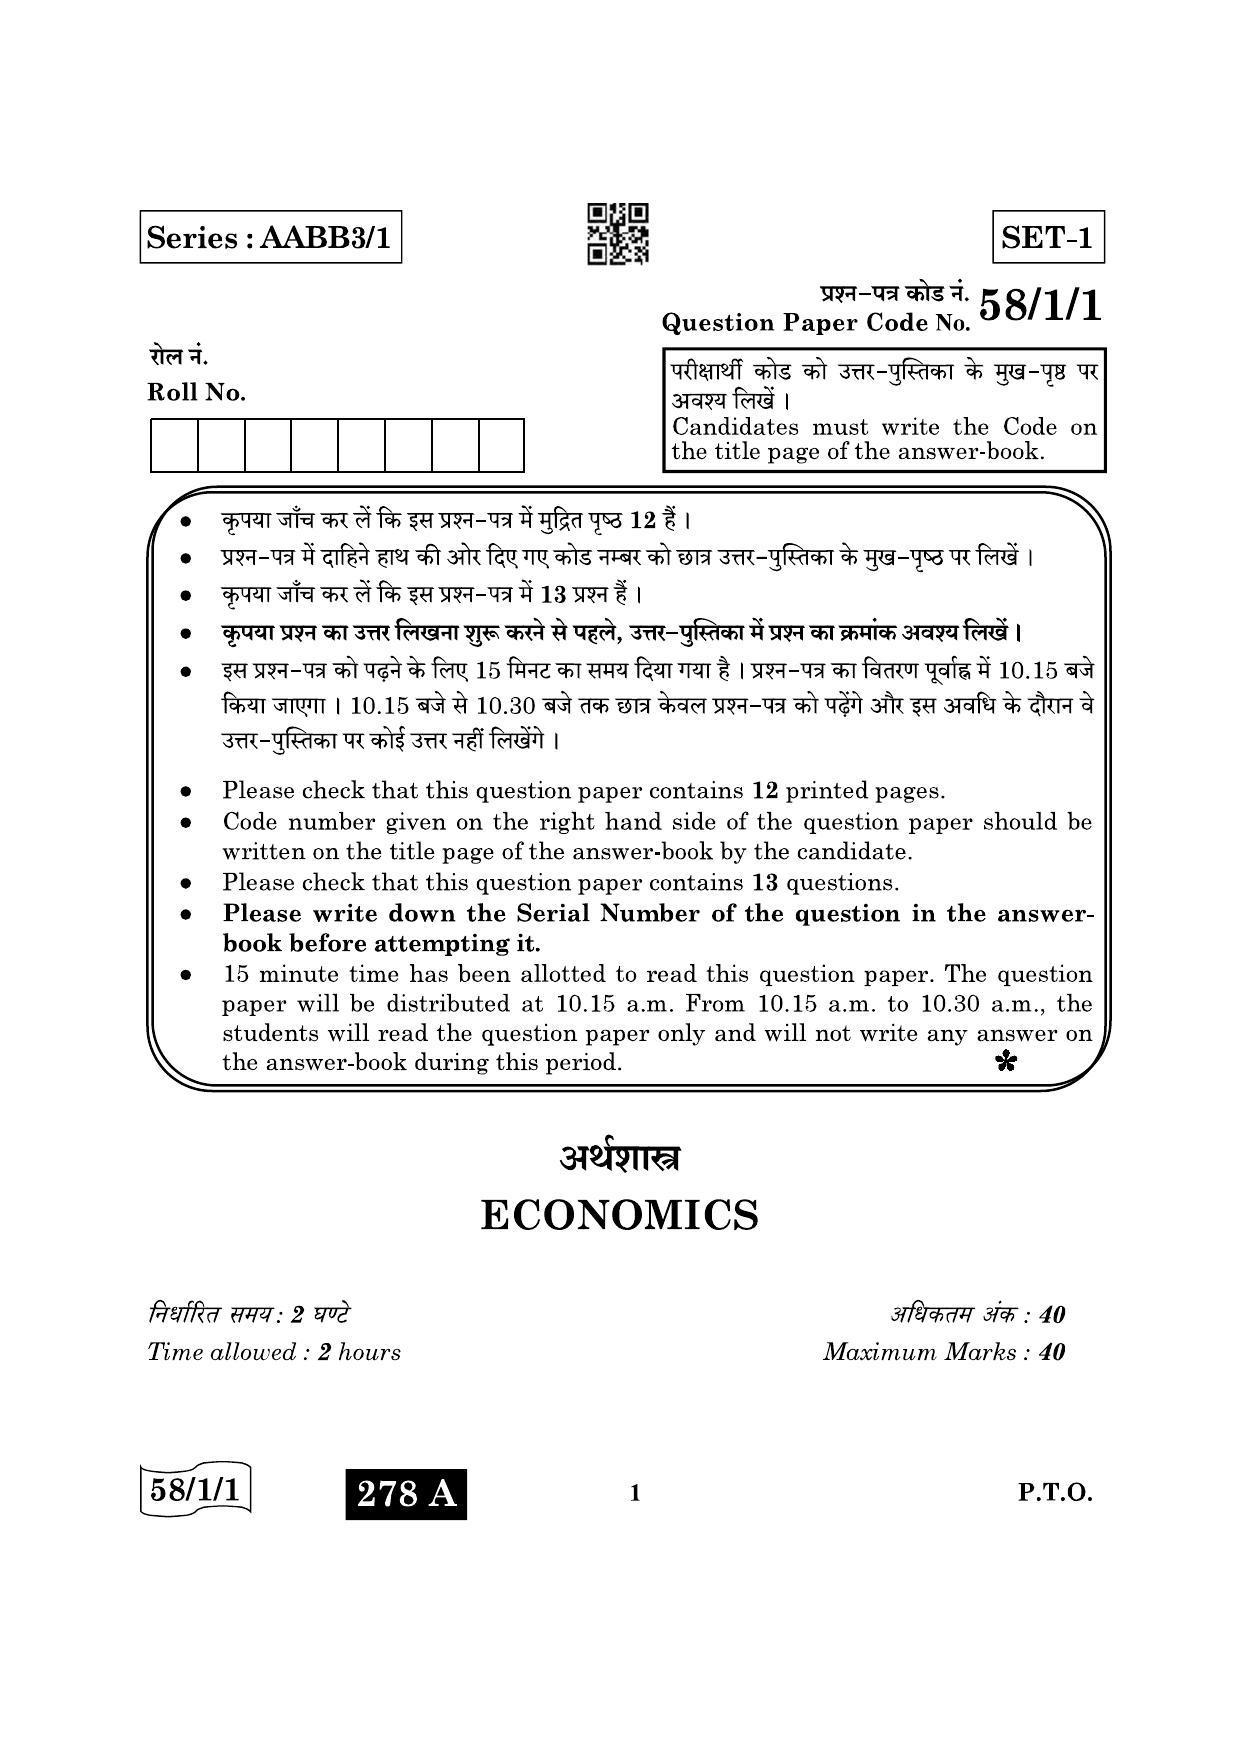 CBSE Class 12 58-1-1 Economics 2022 Question Paper - Page 1